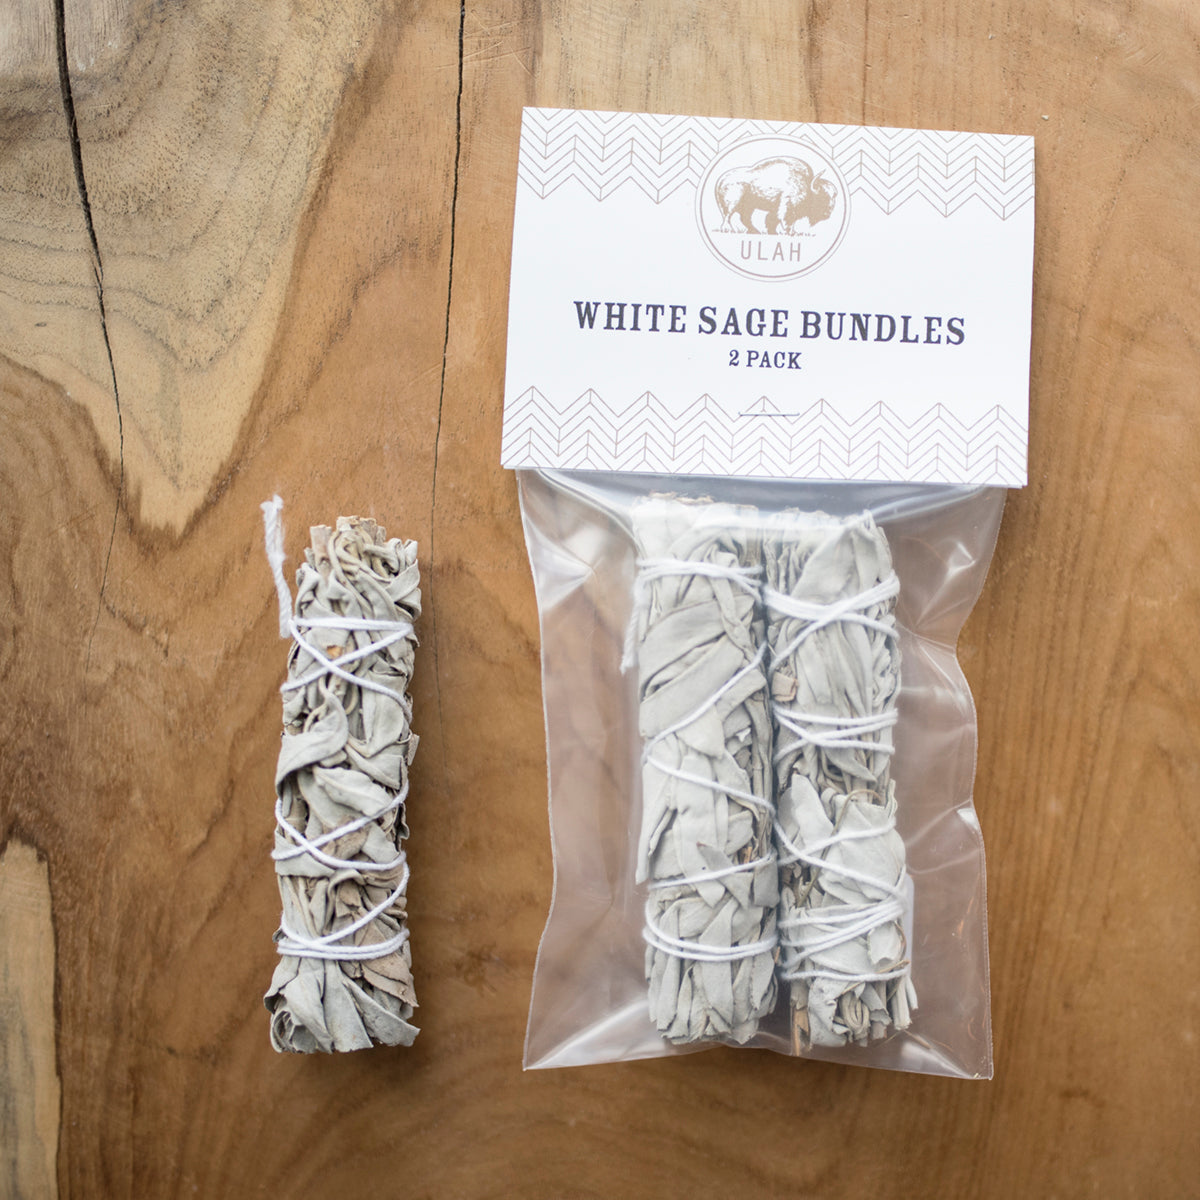 ULAH White Sage Bundles - 2 Pack